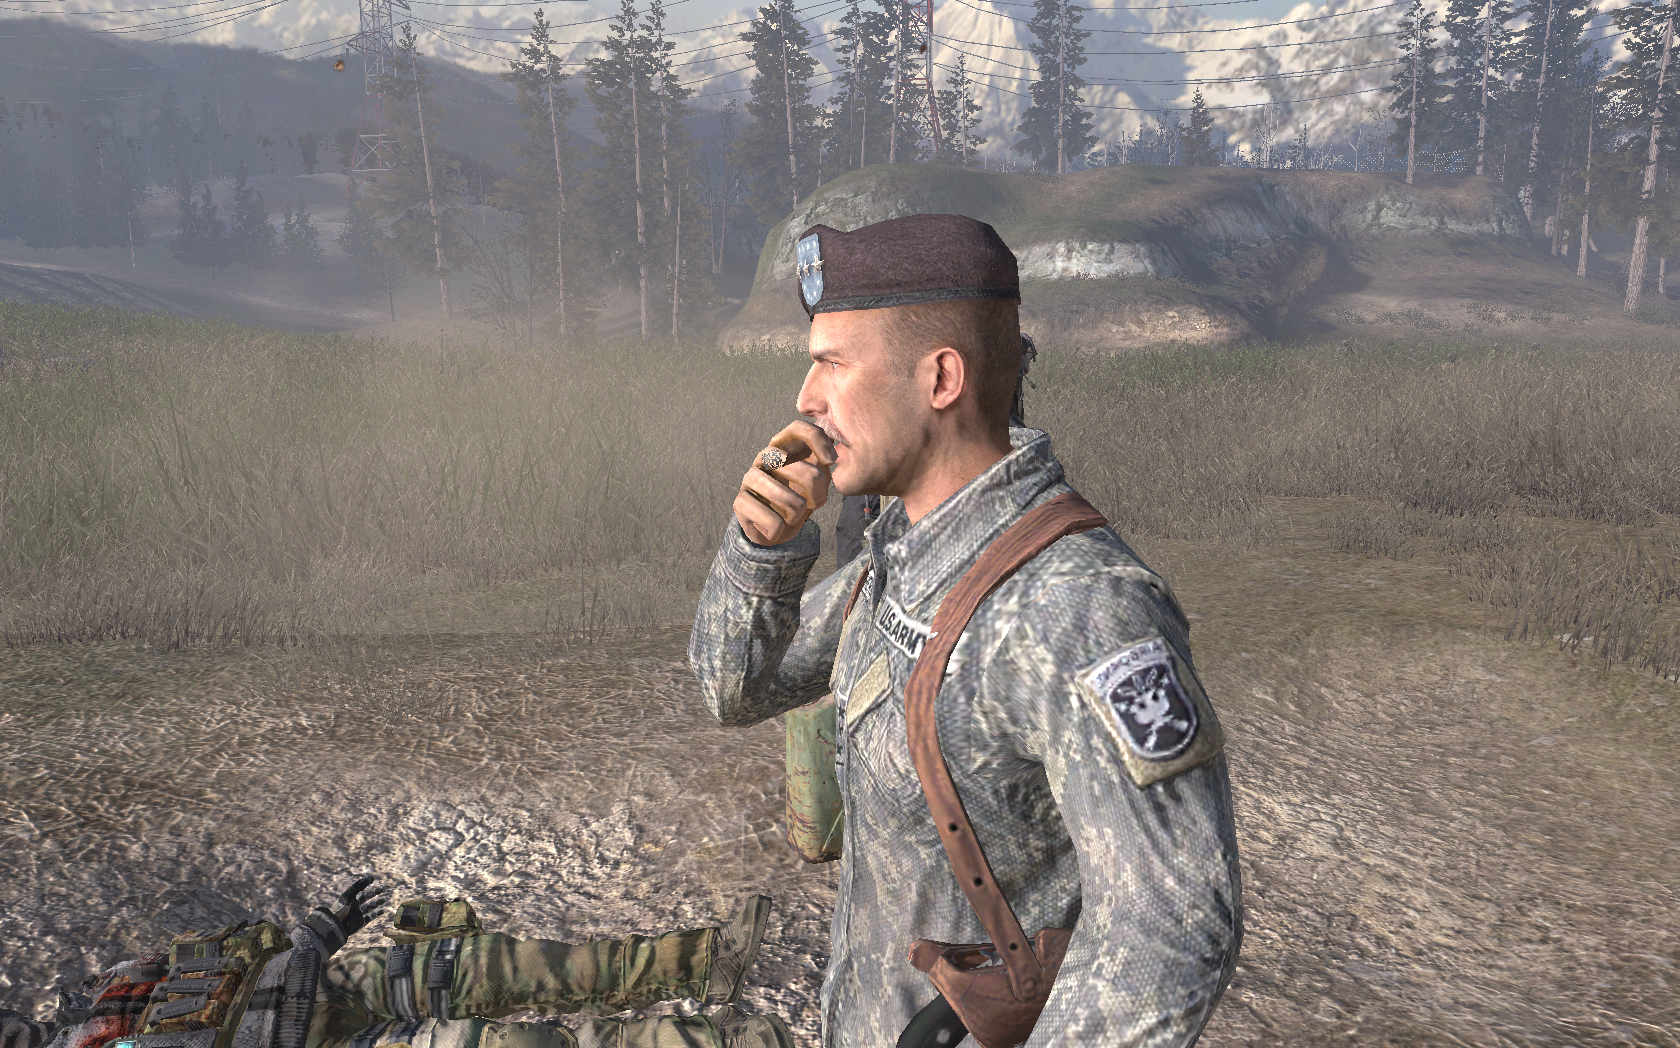 Генерал Шепард. Modern Warfare 2 генерал Шепард. Генерал Шепард Call of Duty. Шепард предатель Call of Duty Modern Warfare 2.